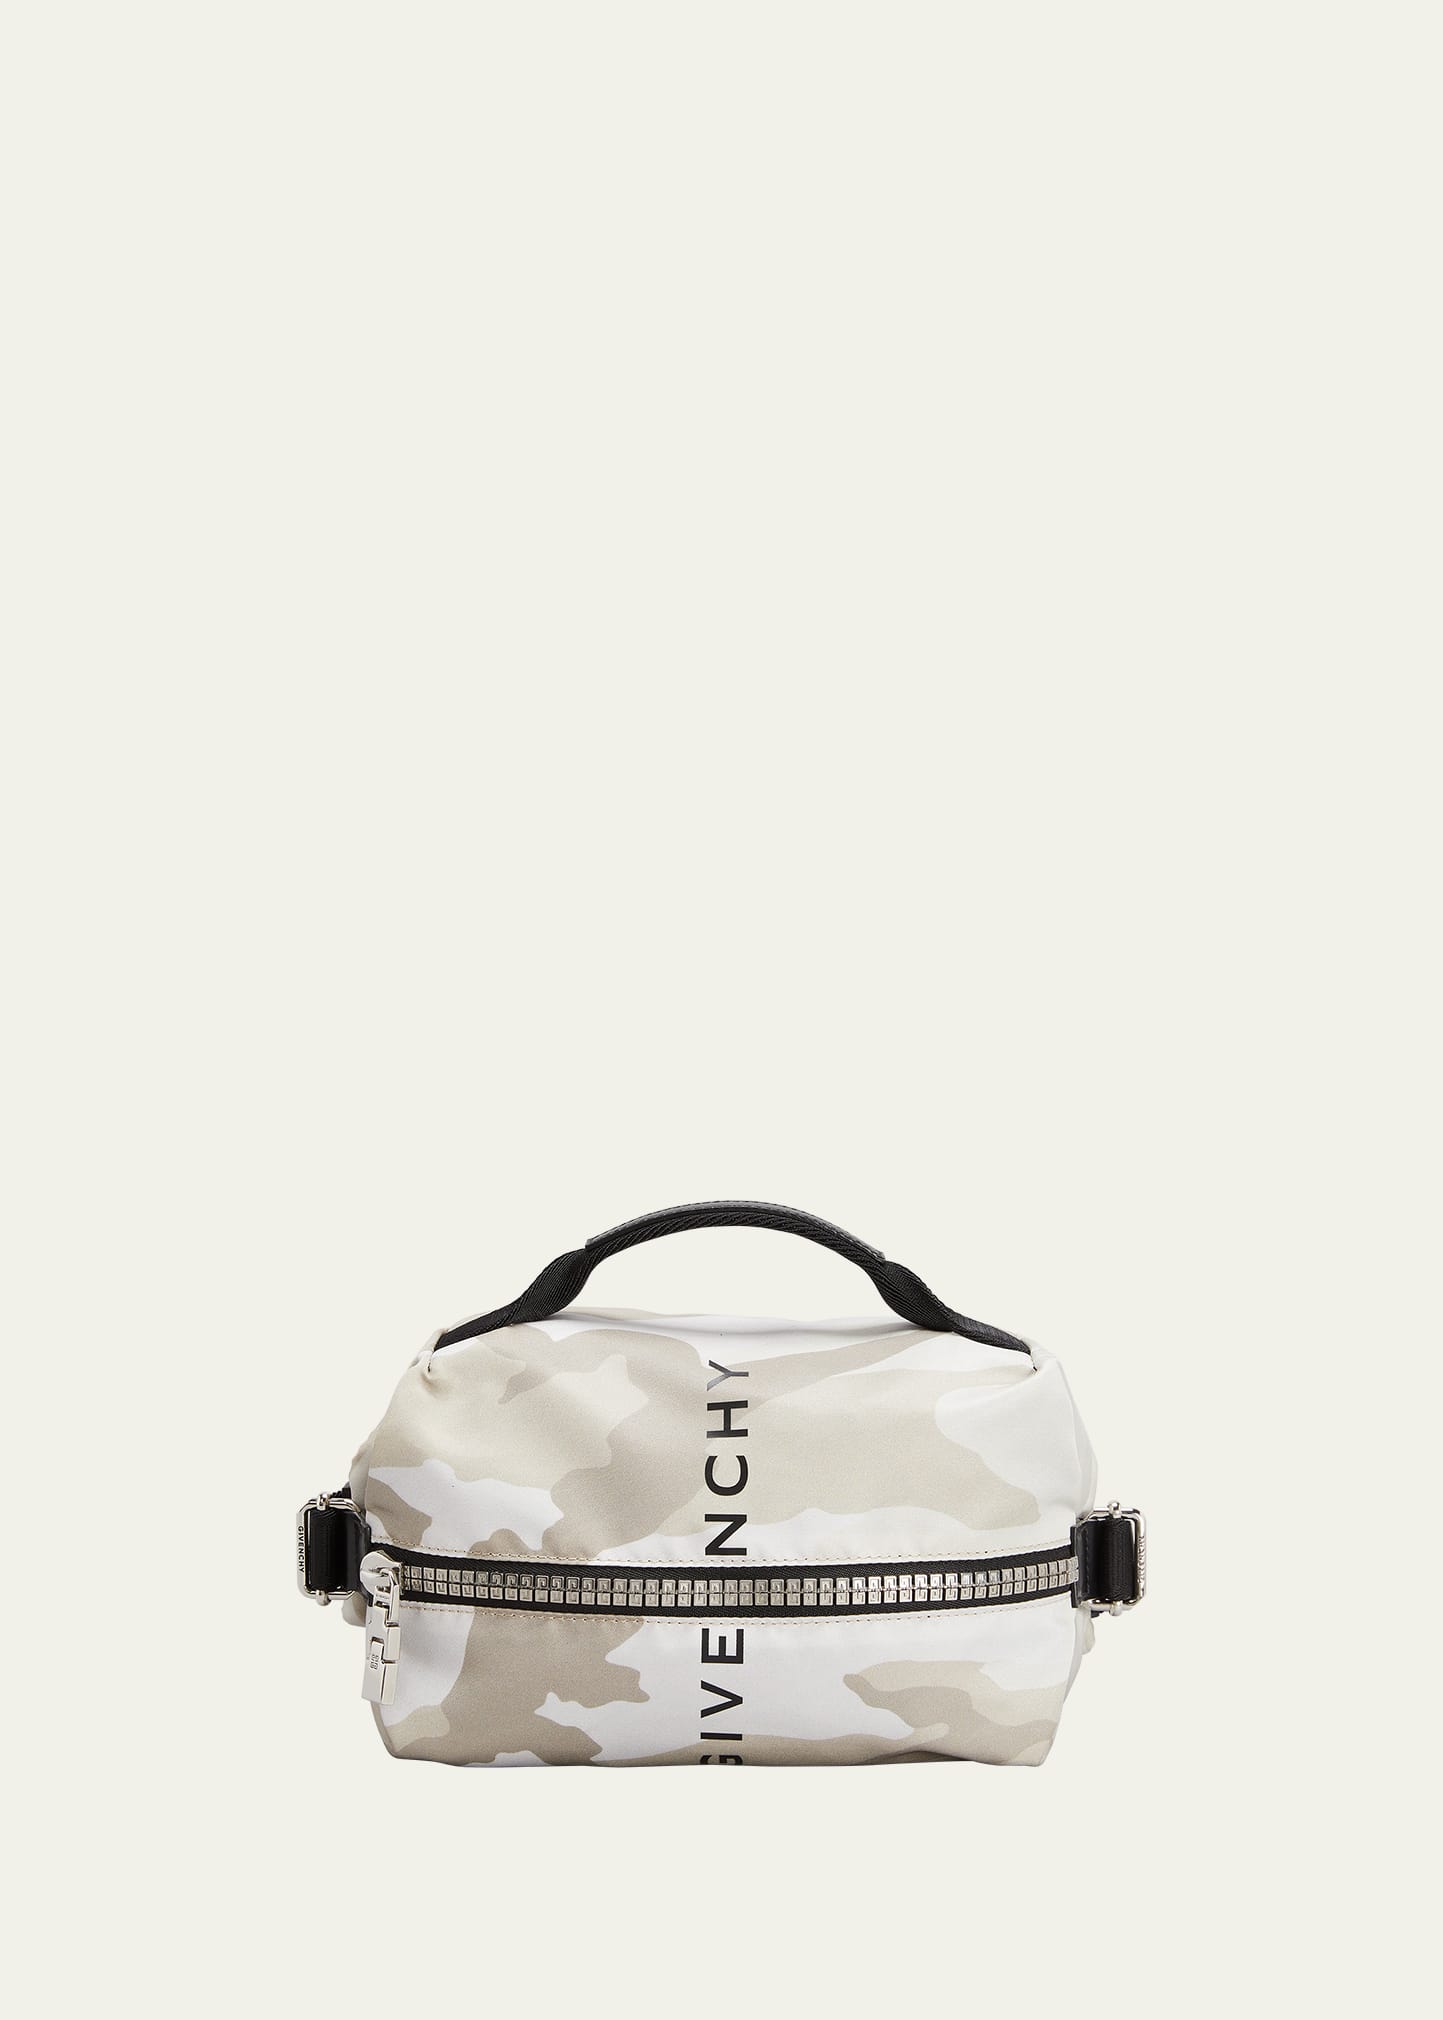 Givenchy｜Small Bag, Large Bag, Belt Bag｜